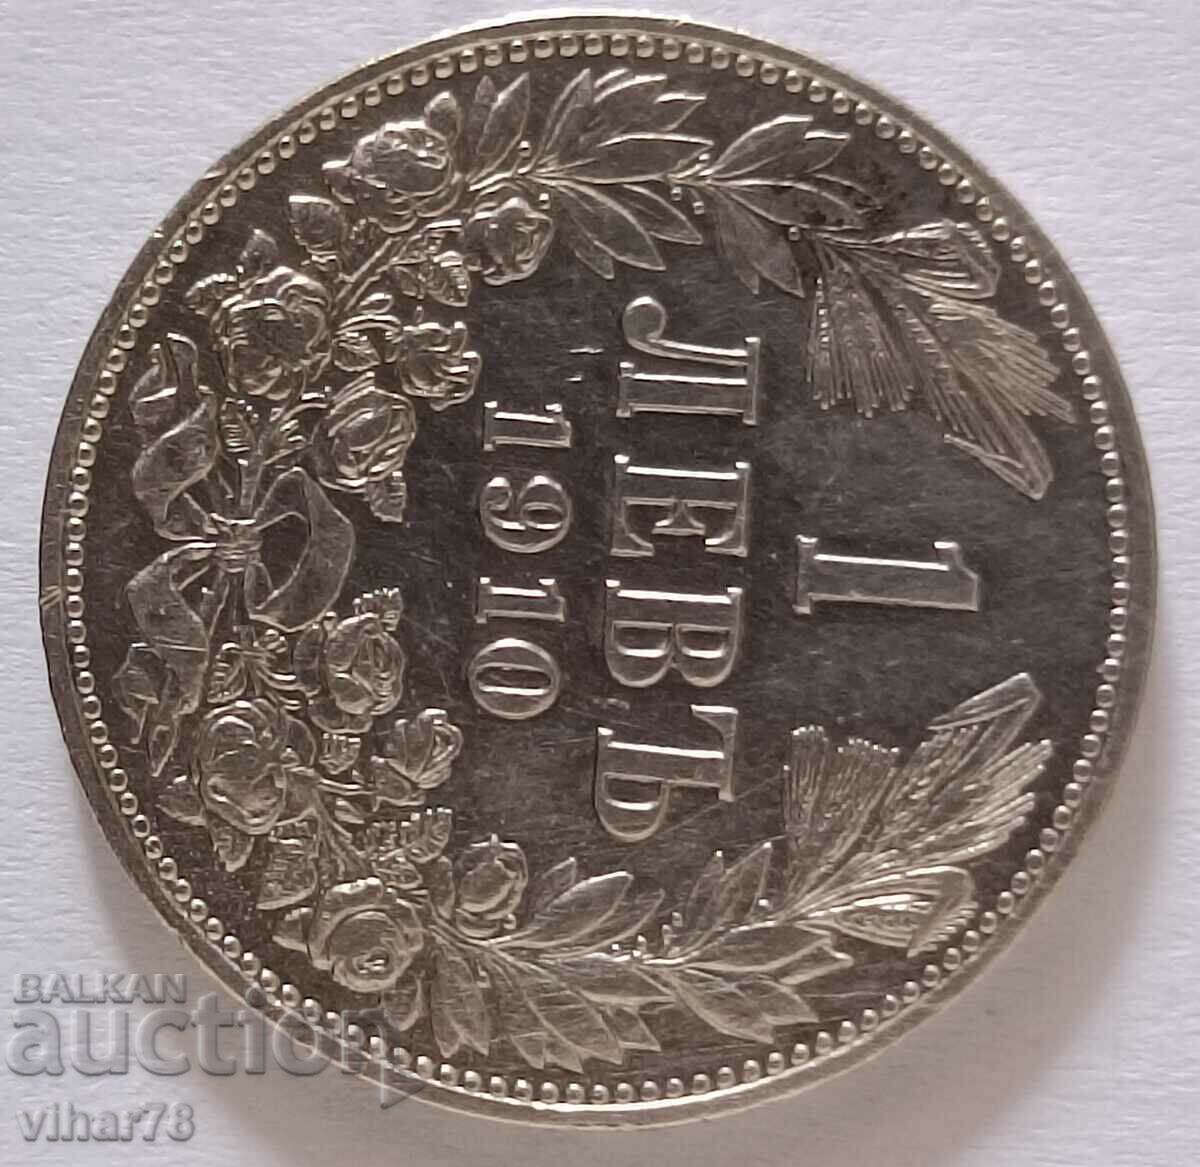 1 monedă de argint 1910 BGN